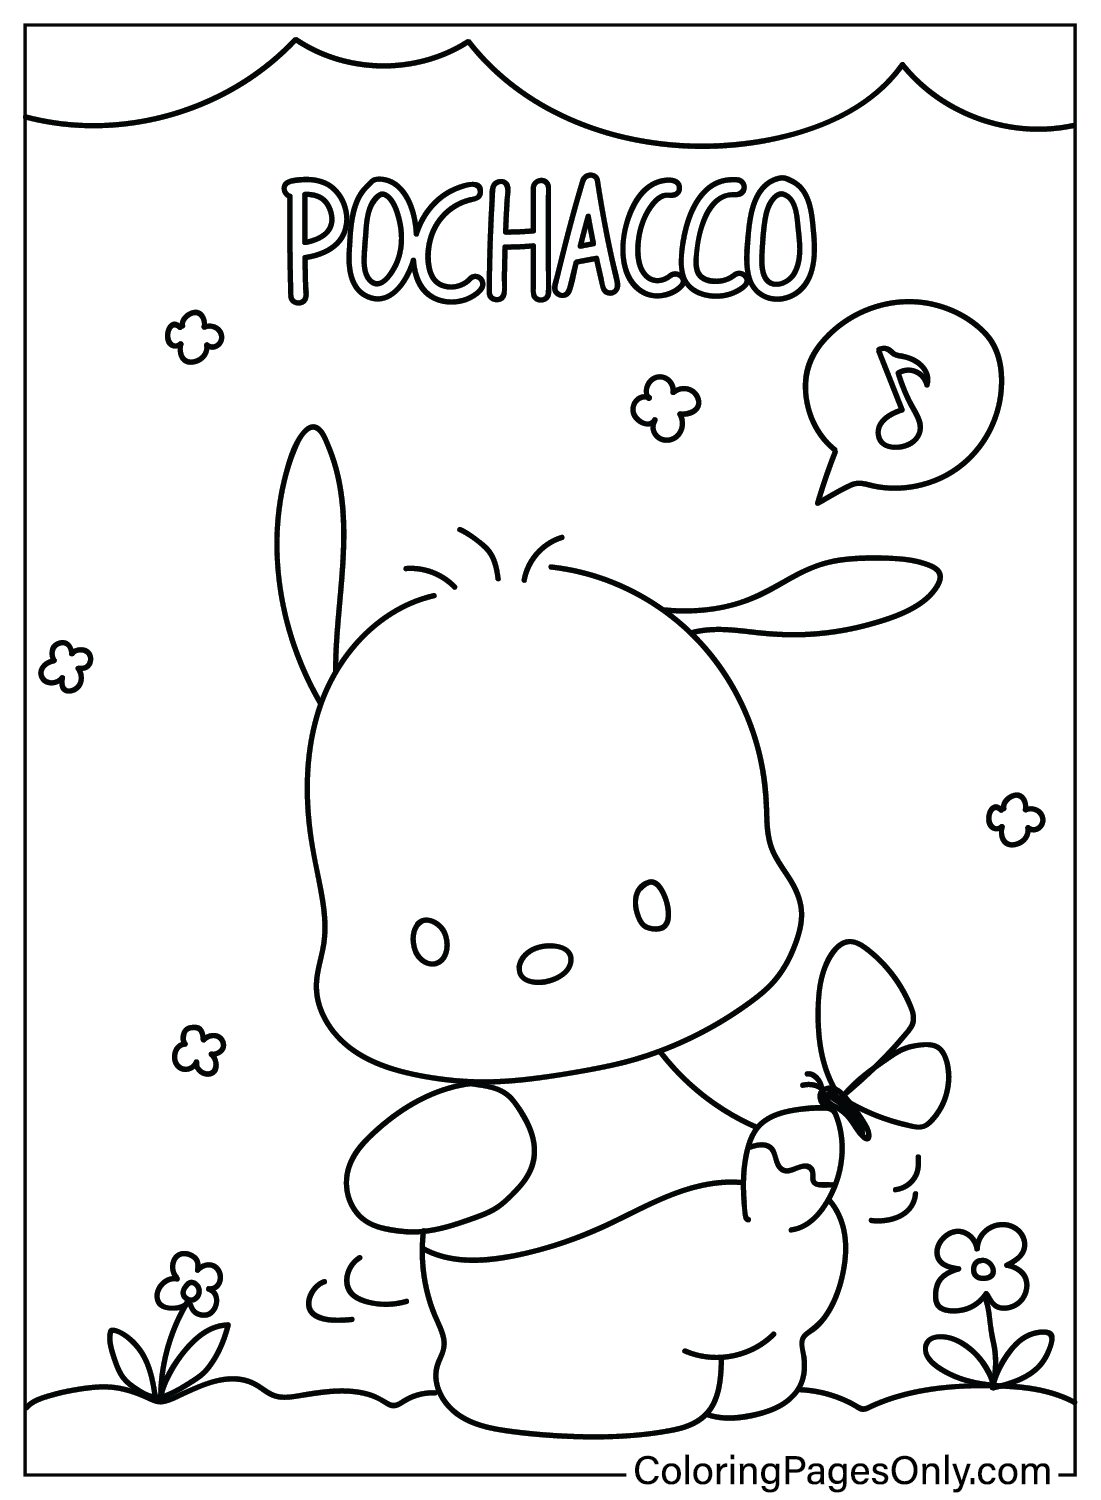 Coloriage Pochacco gratuit de Pochacco